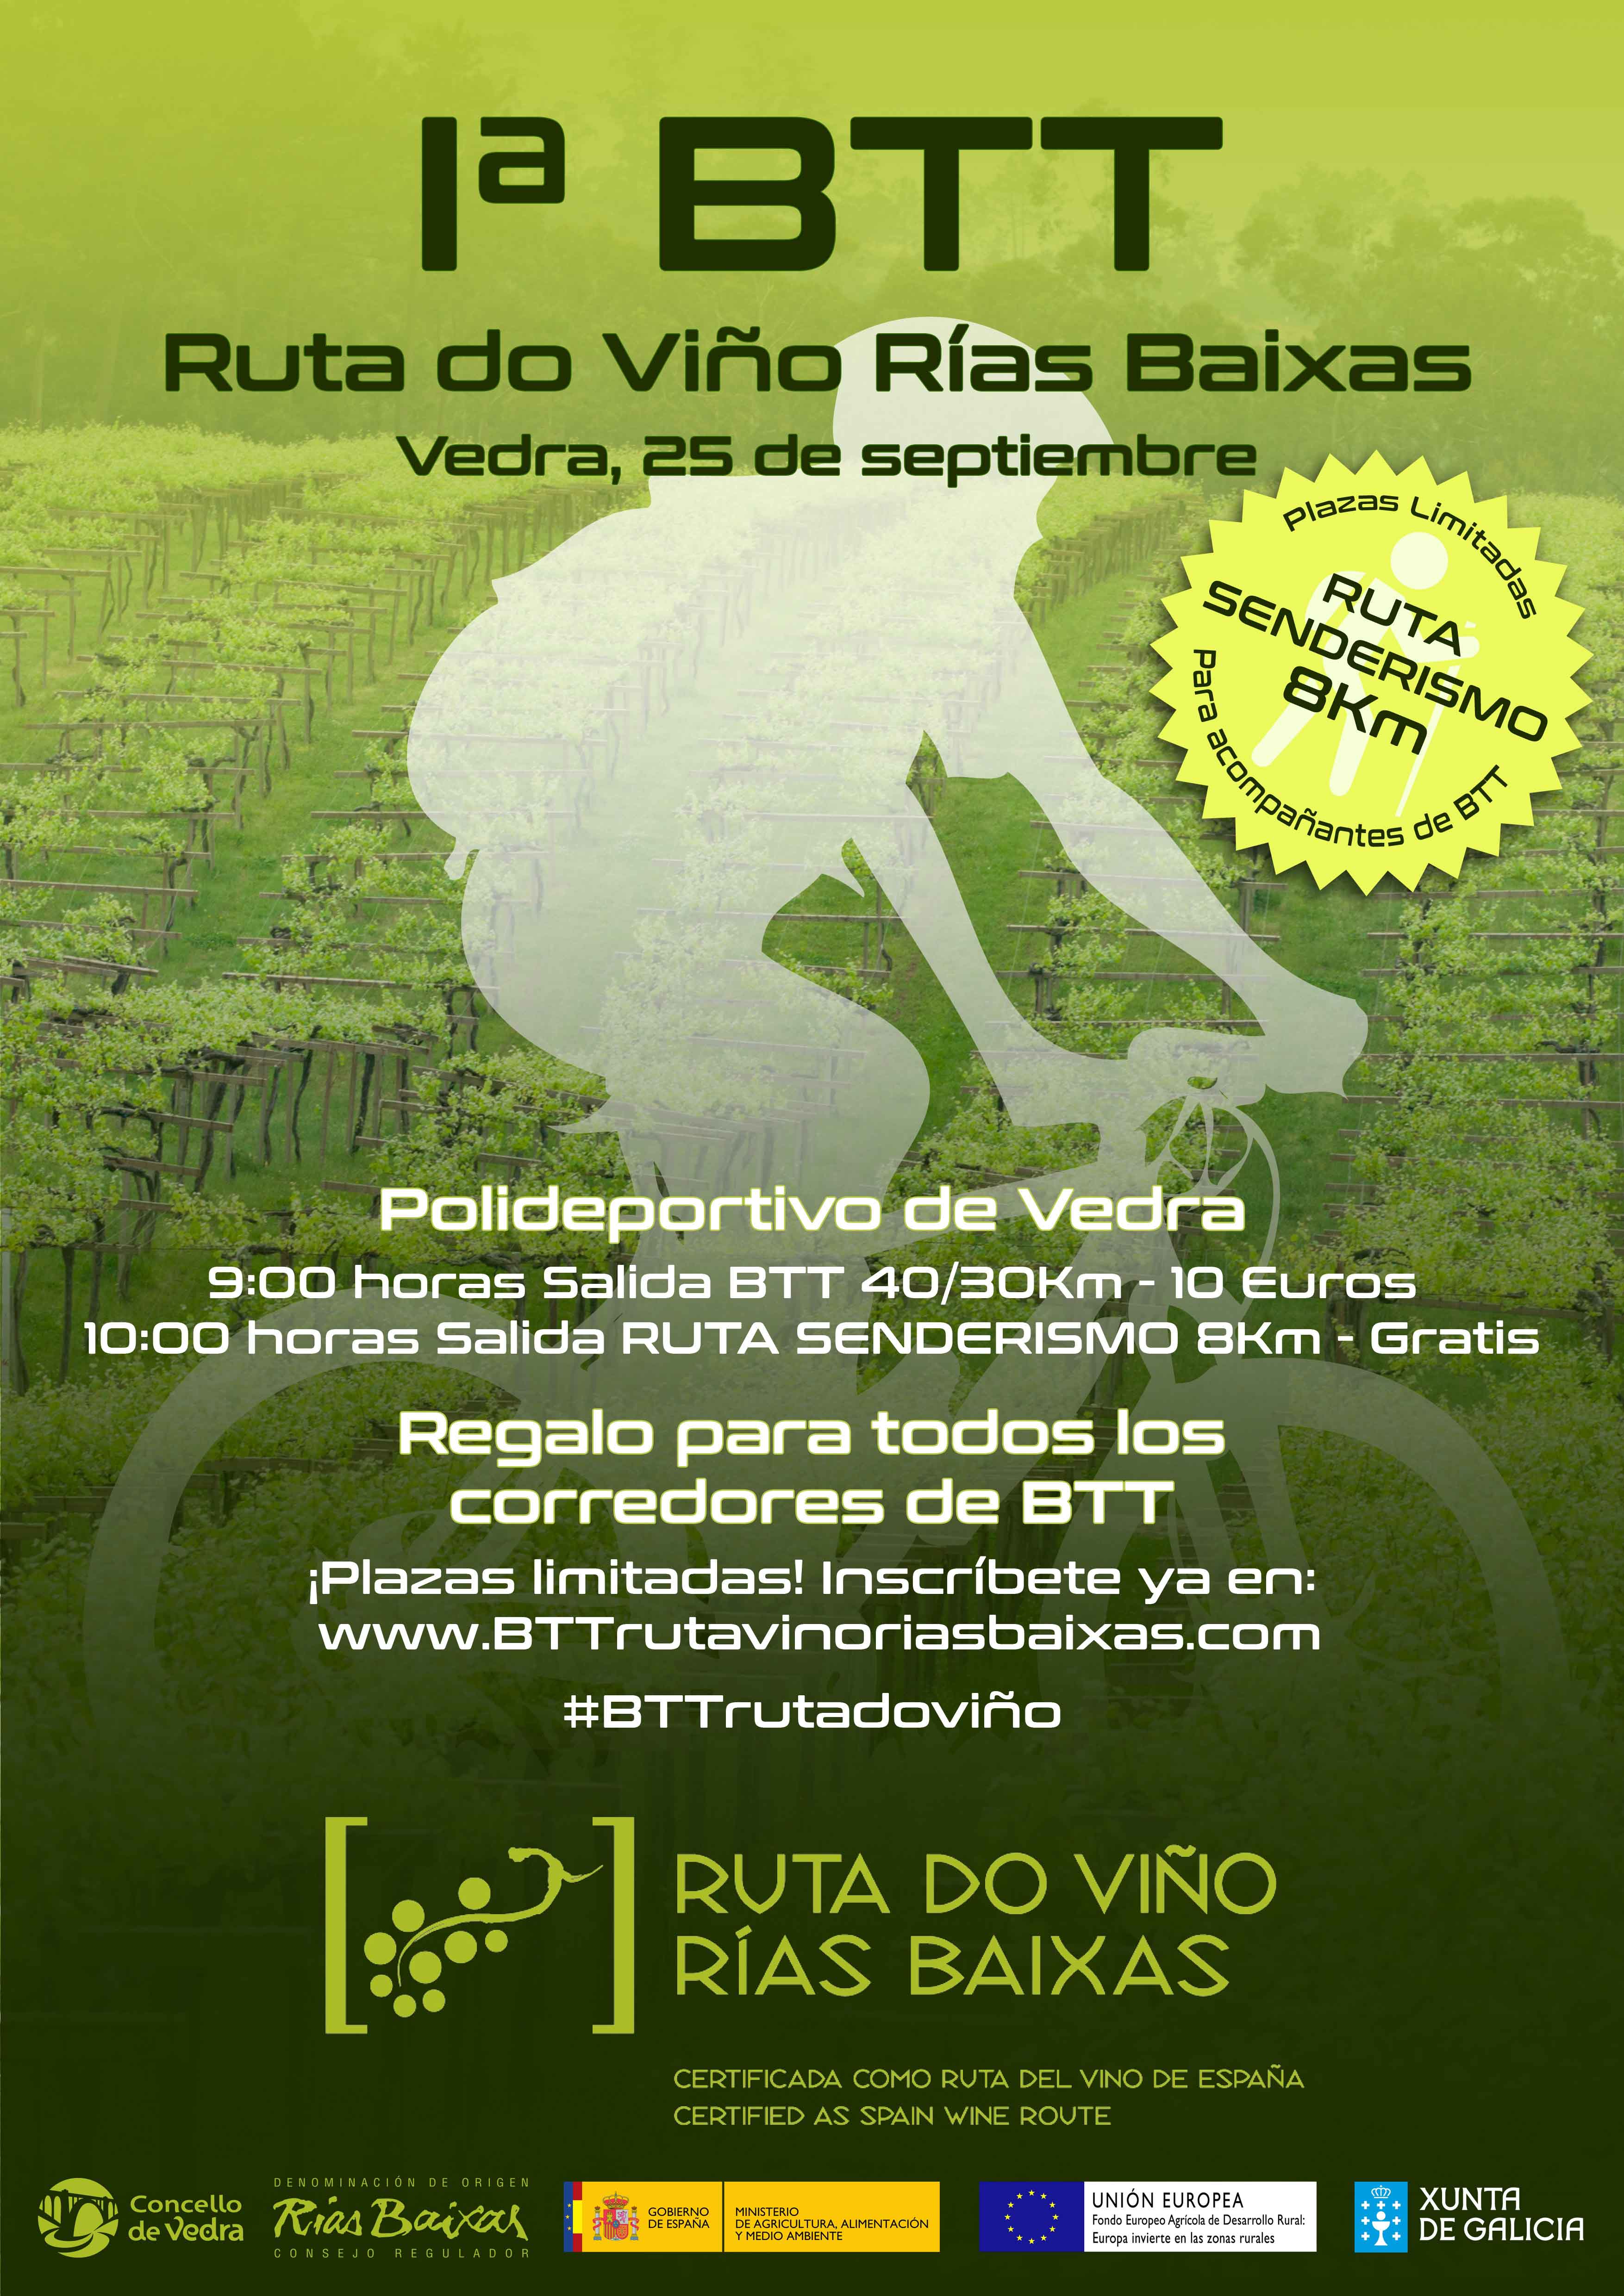 Vedra acogerá el 25 de septiembre la primera BTT de la Ruta do Viño Rías Baixas